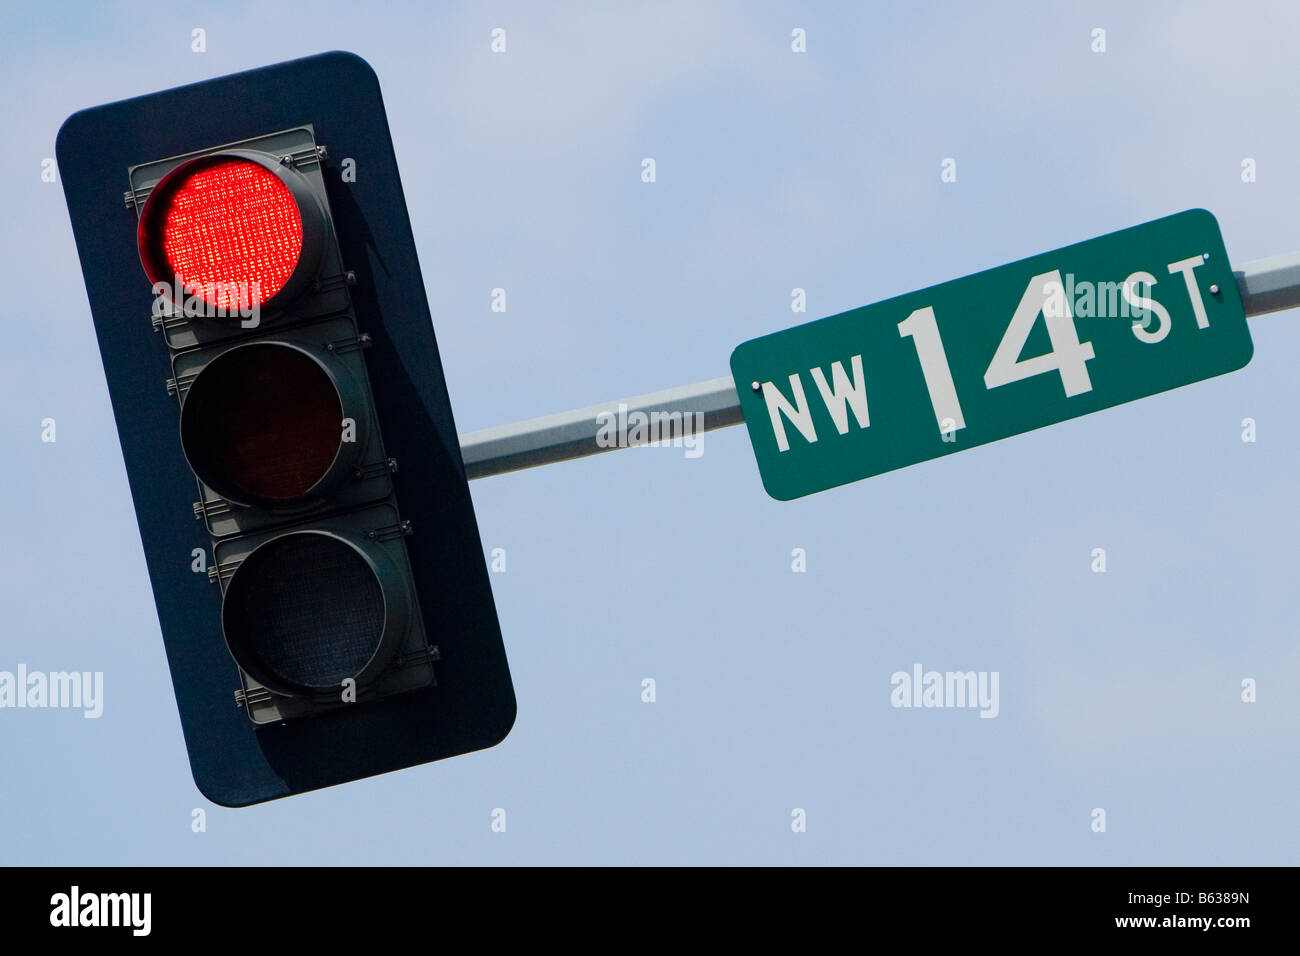 Basso angolo di visione di un cartello stradale su un semaforo, Washington DC, Stati Uniti d'America Foto Stock